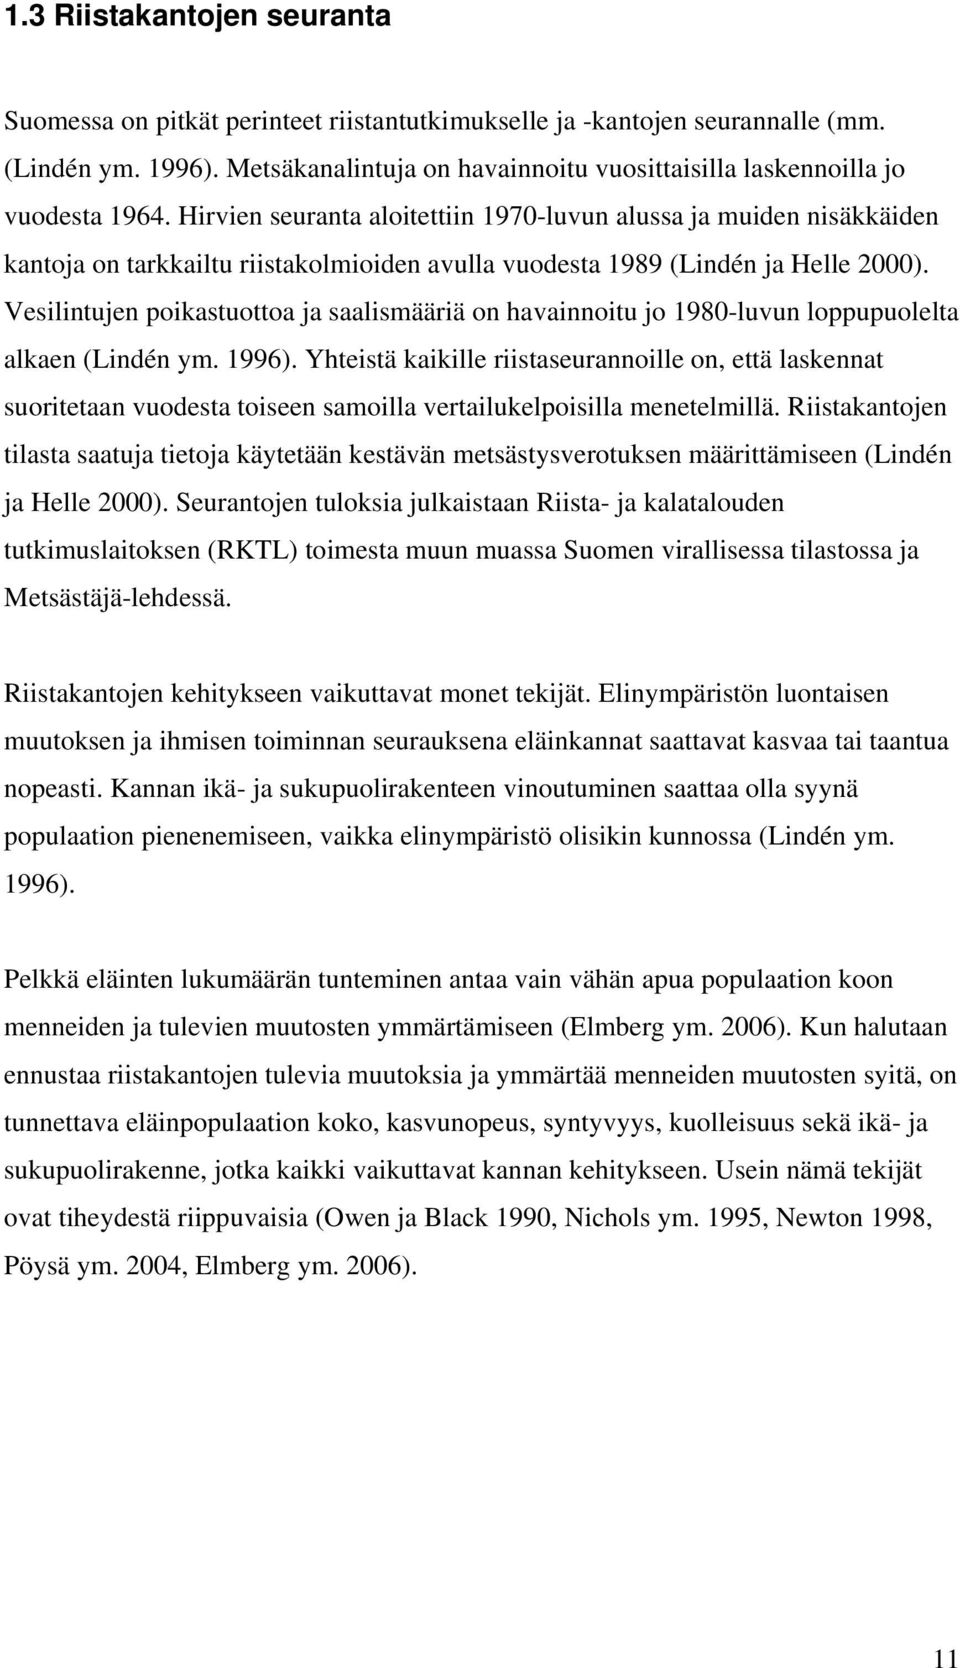 Hirvien seuranta aloitettiin 1970-luvun alussa ja muiden nisäkkäiden kantoja on tarkkailtu riistakolmioiden avulla vuodesta 1989 (Lindén ja Helle 2000).